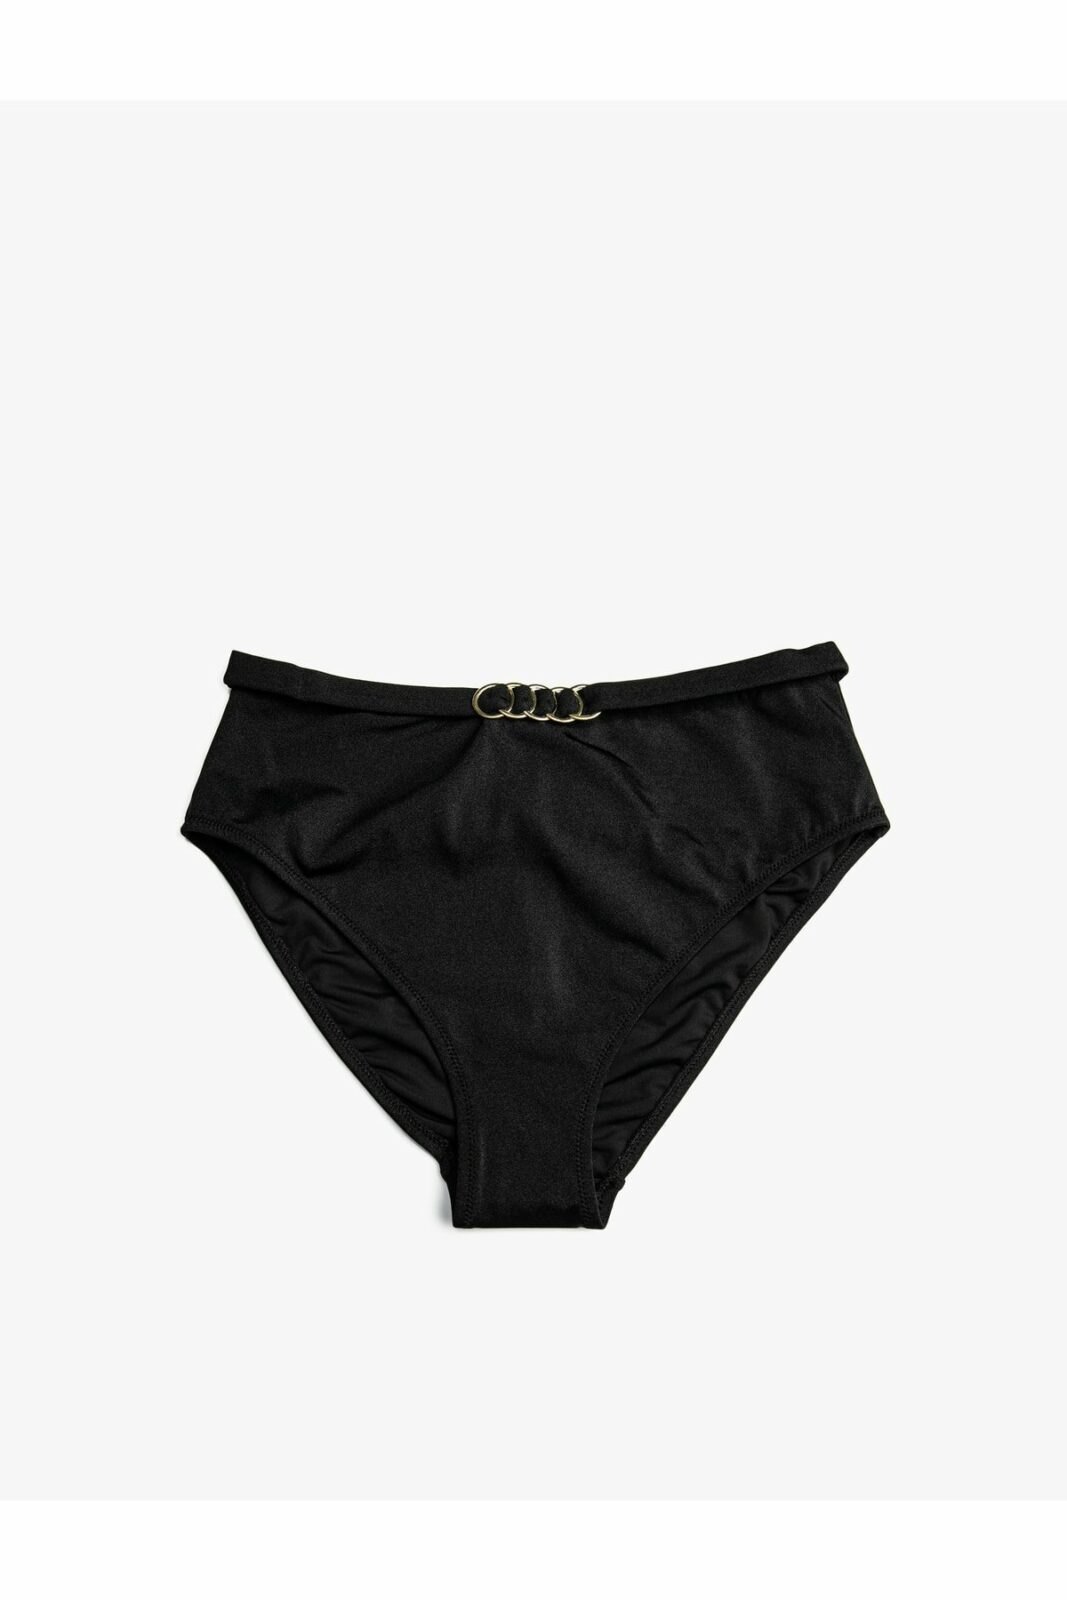 Koton Bikini Bottom - Black